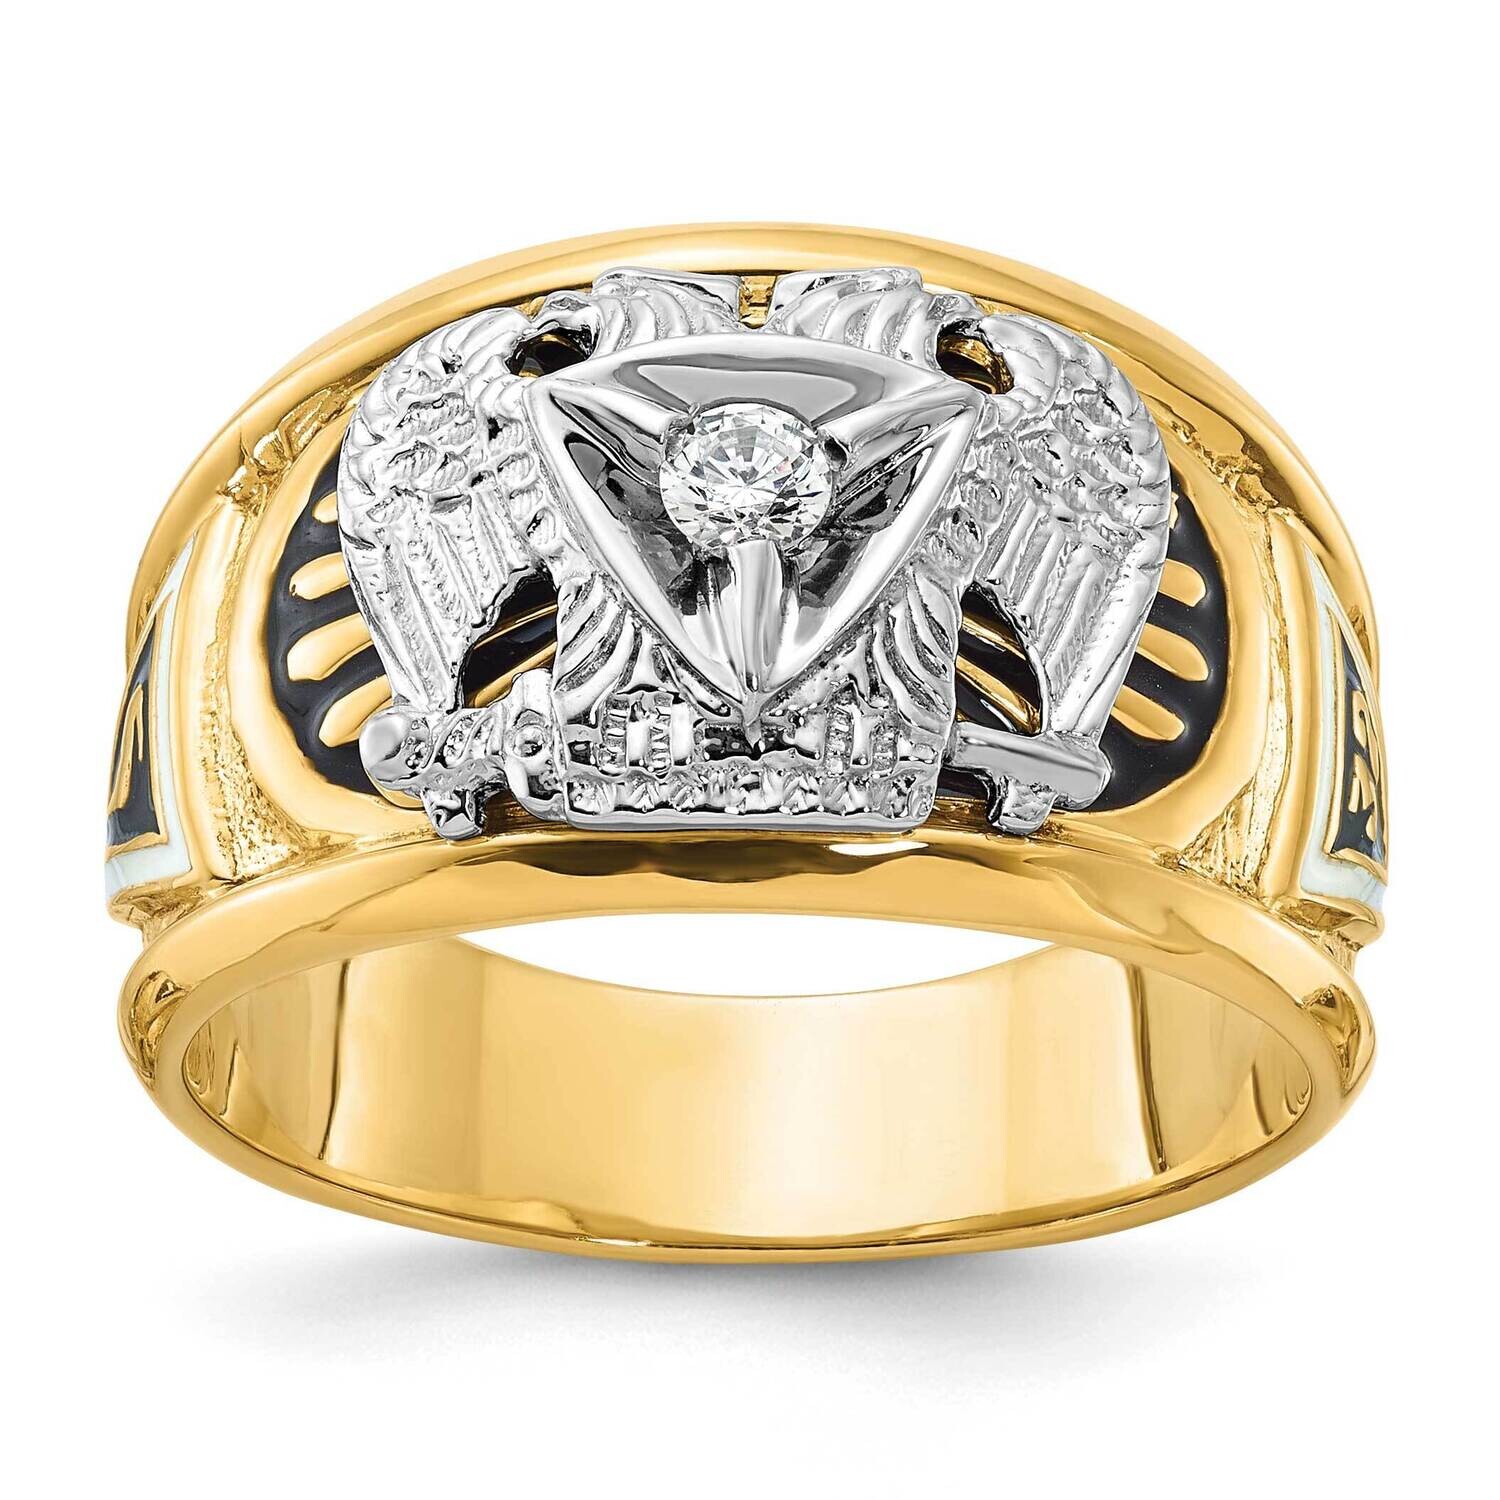 Ibgoodman Men's Polished Textured 32Nd Degree Scottish Rite Masonic Ring Mounting 10k Two-Tone Gold B02444-0YW